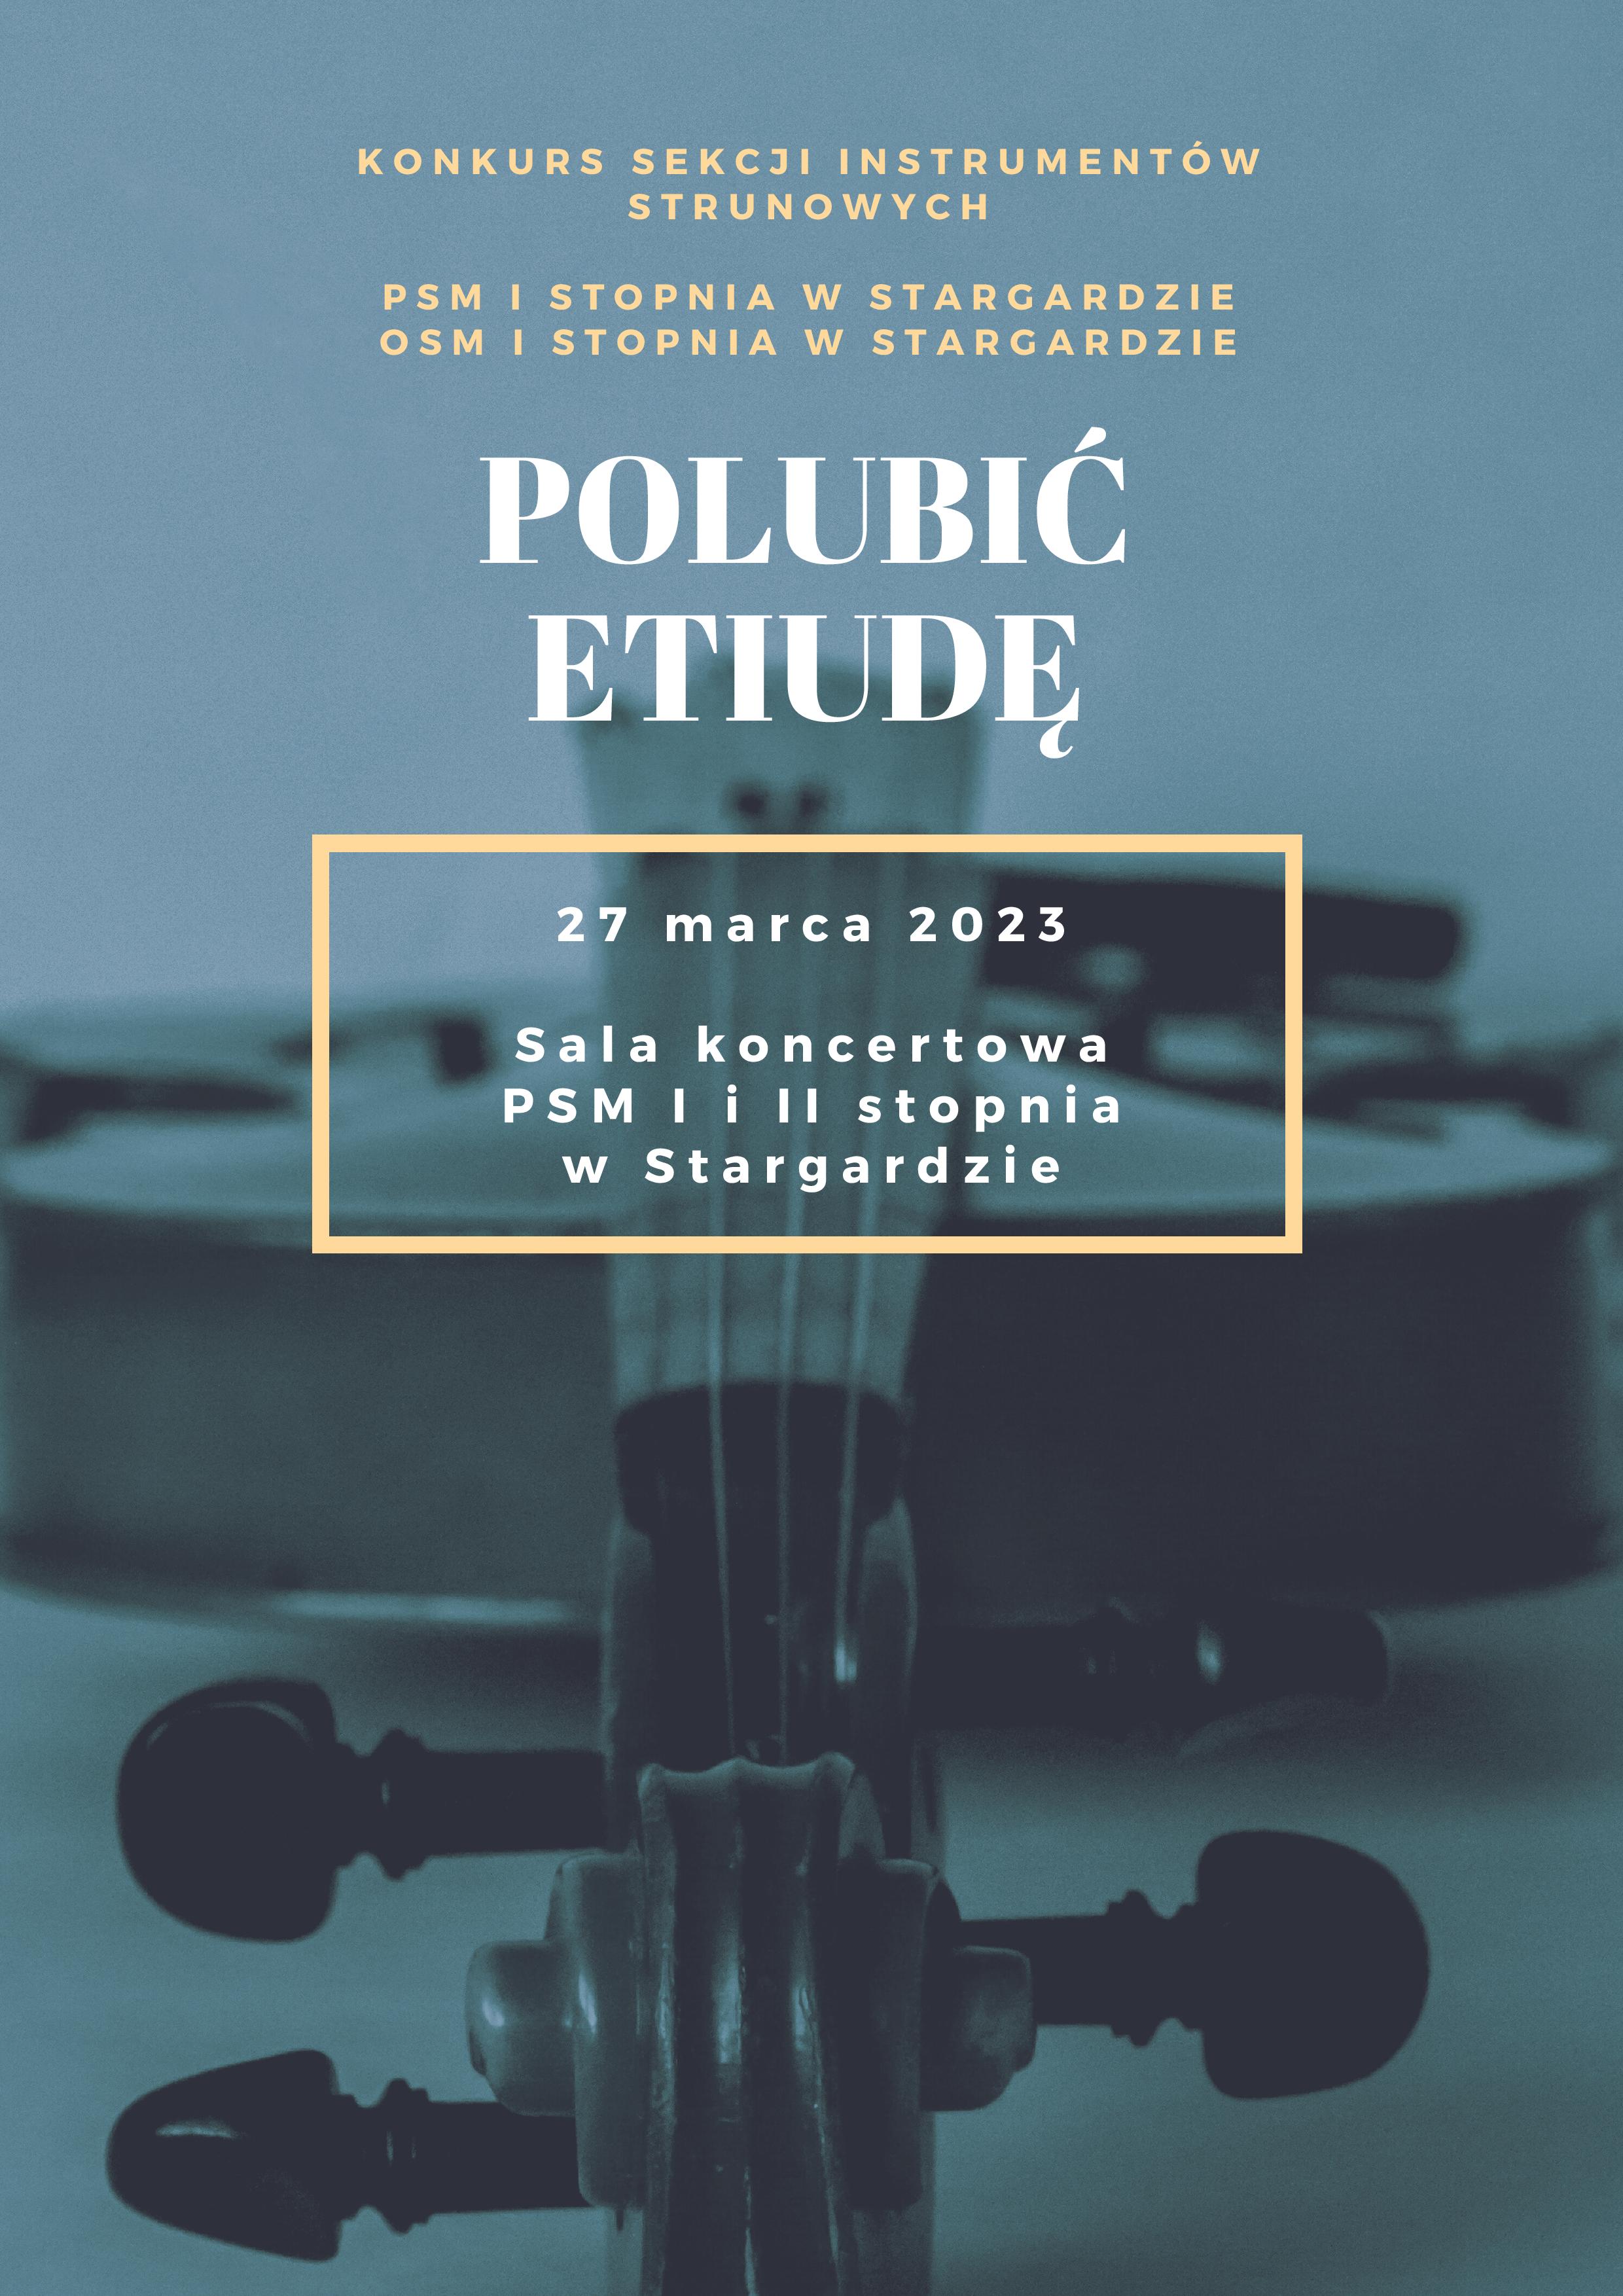 Informacja o konkursie sekcji instrumentów strunowych Polubić etiudę w dniu 27 marca 2023.